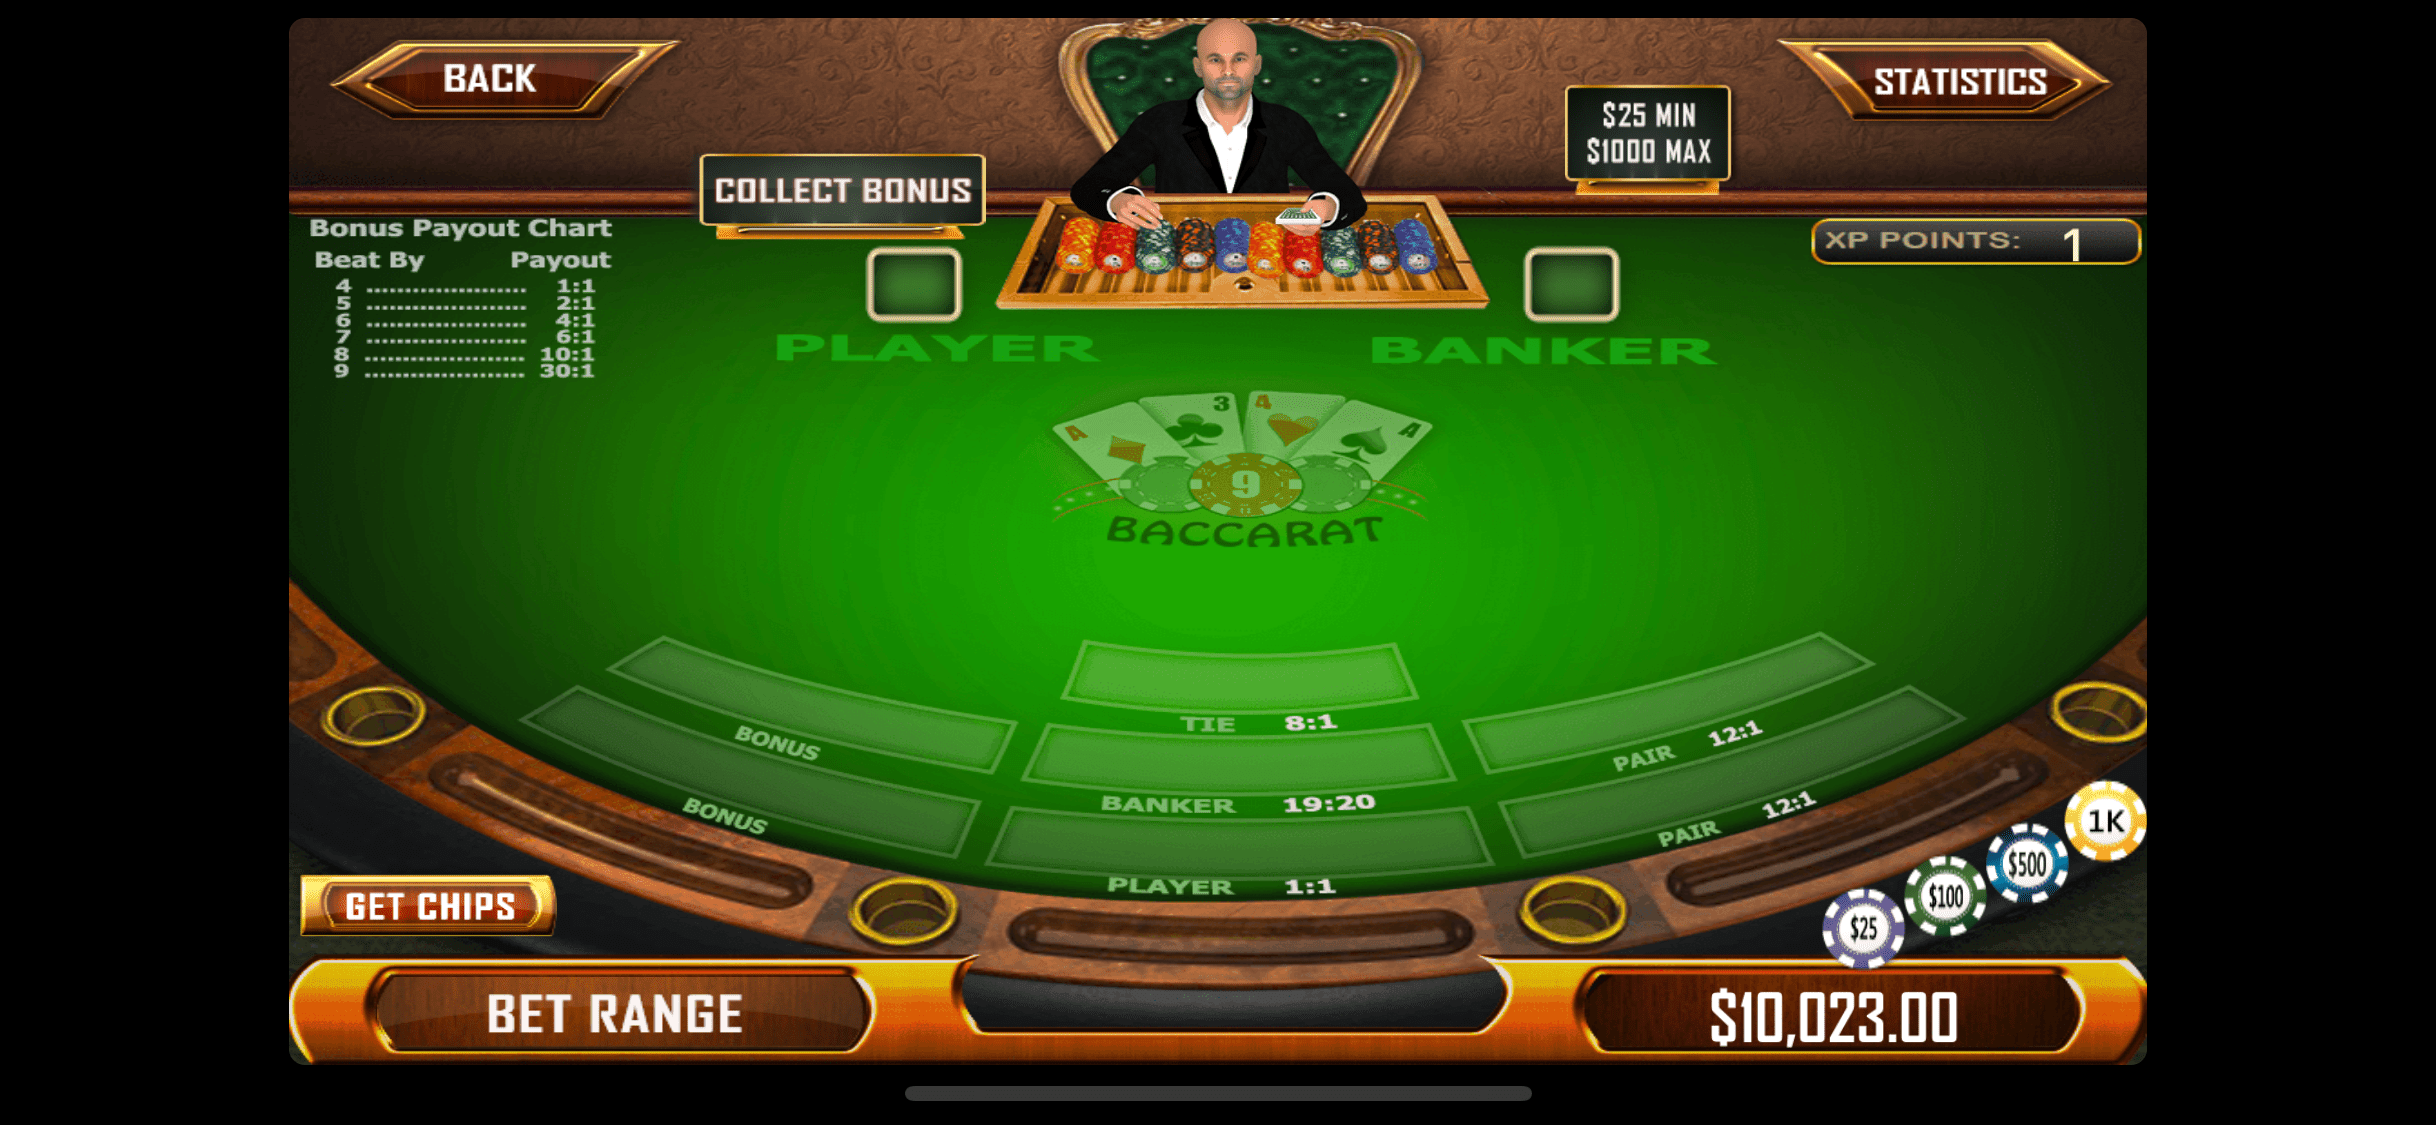 ganhar dinheiro com poker online